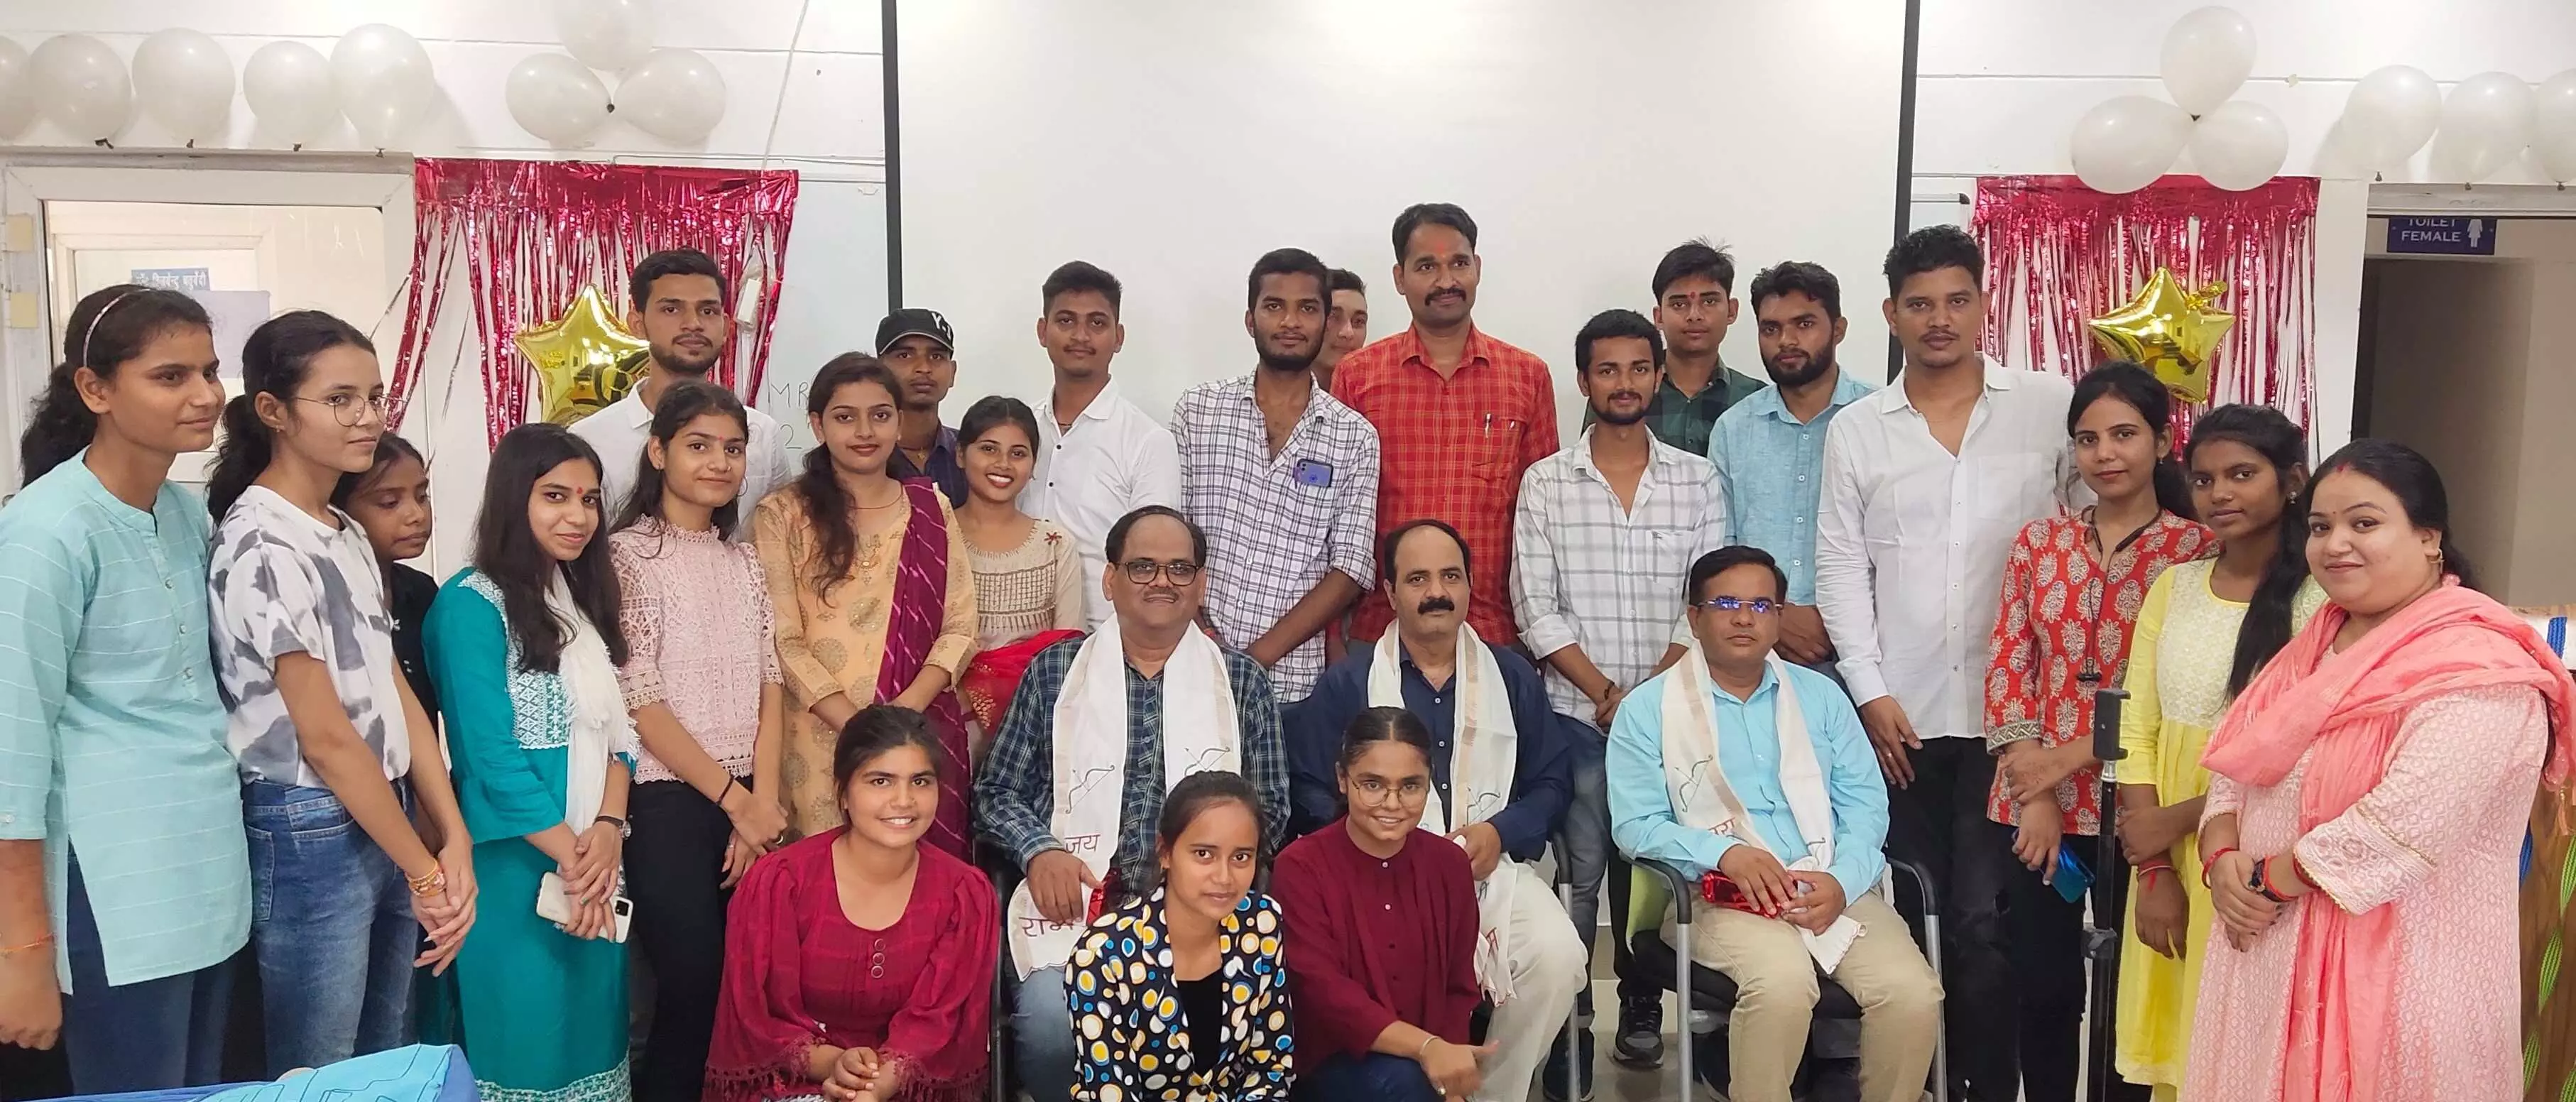 अवध विवि में शिक्षक दिवस धूमधाम के साथ मनाया गया